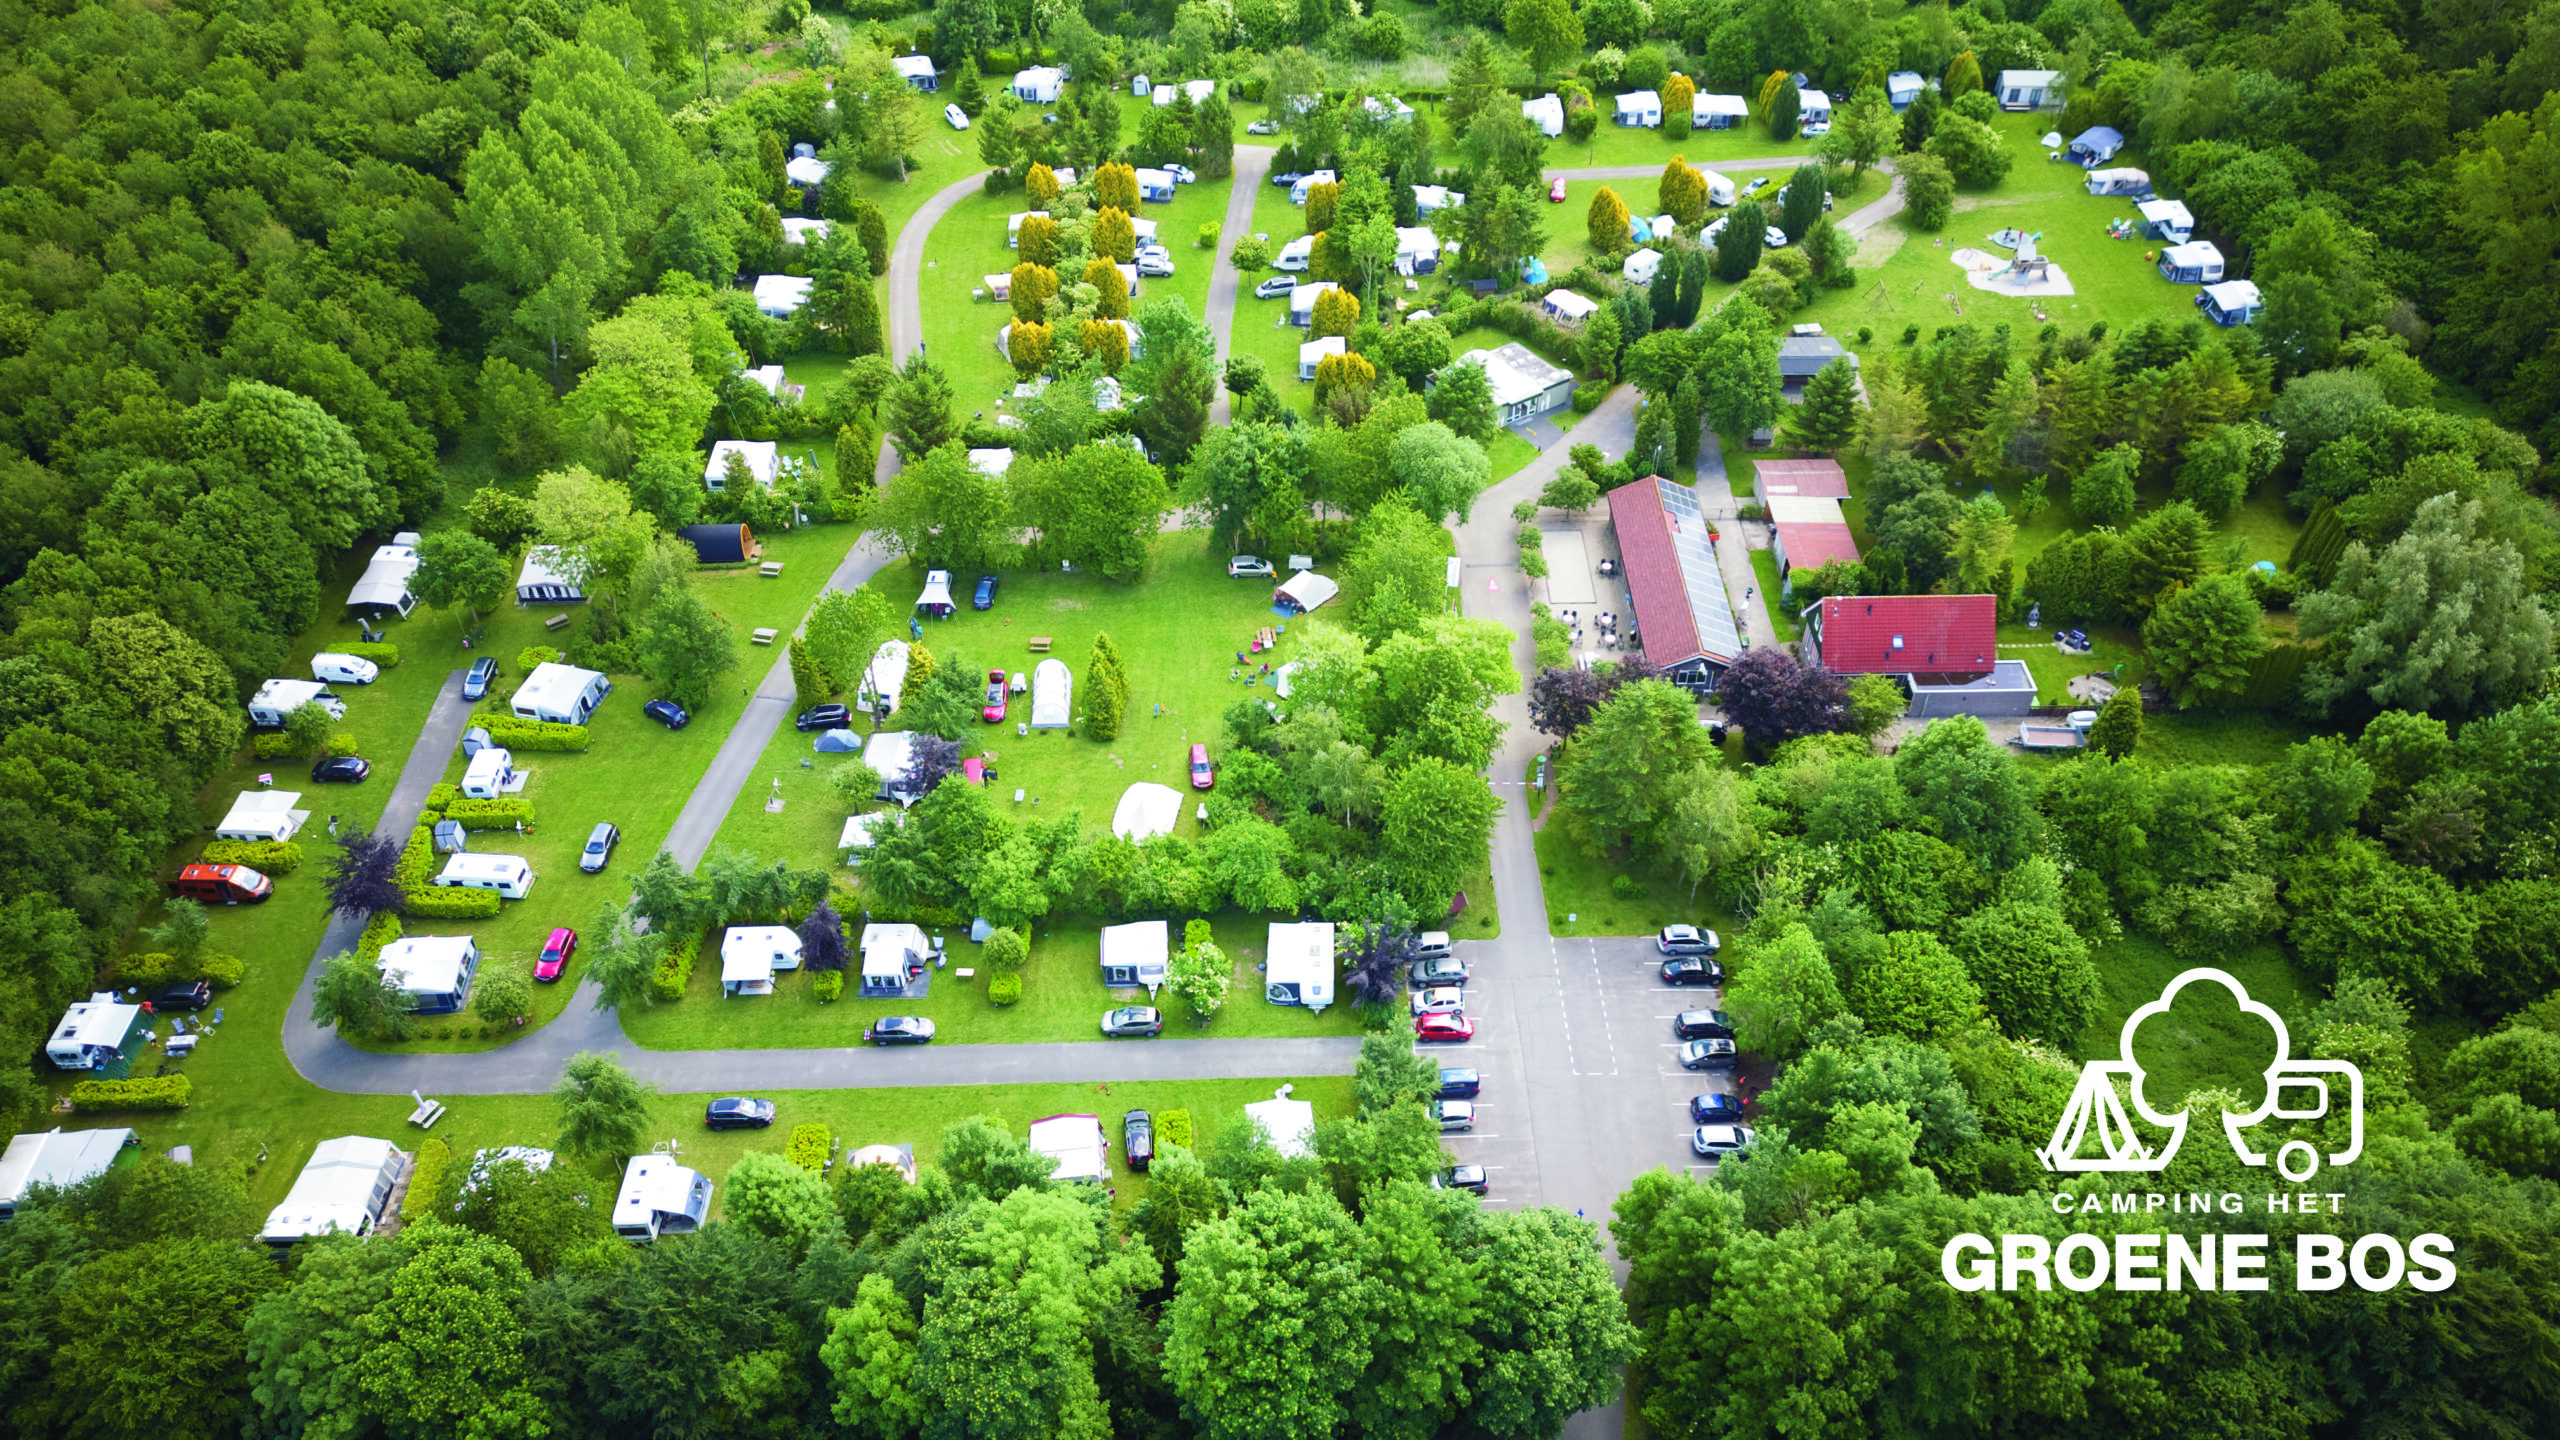 Previs site Besluit beddengoed Camping het Groene Bos » Karaktervolle Groene Camping